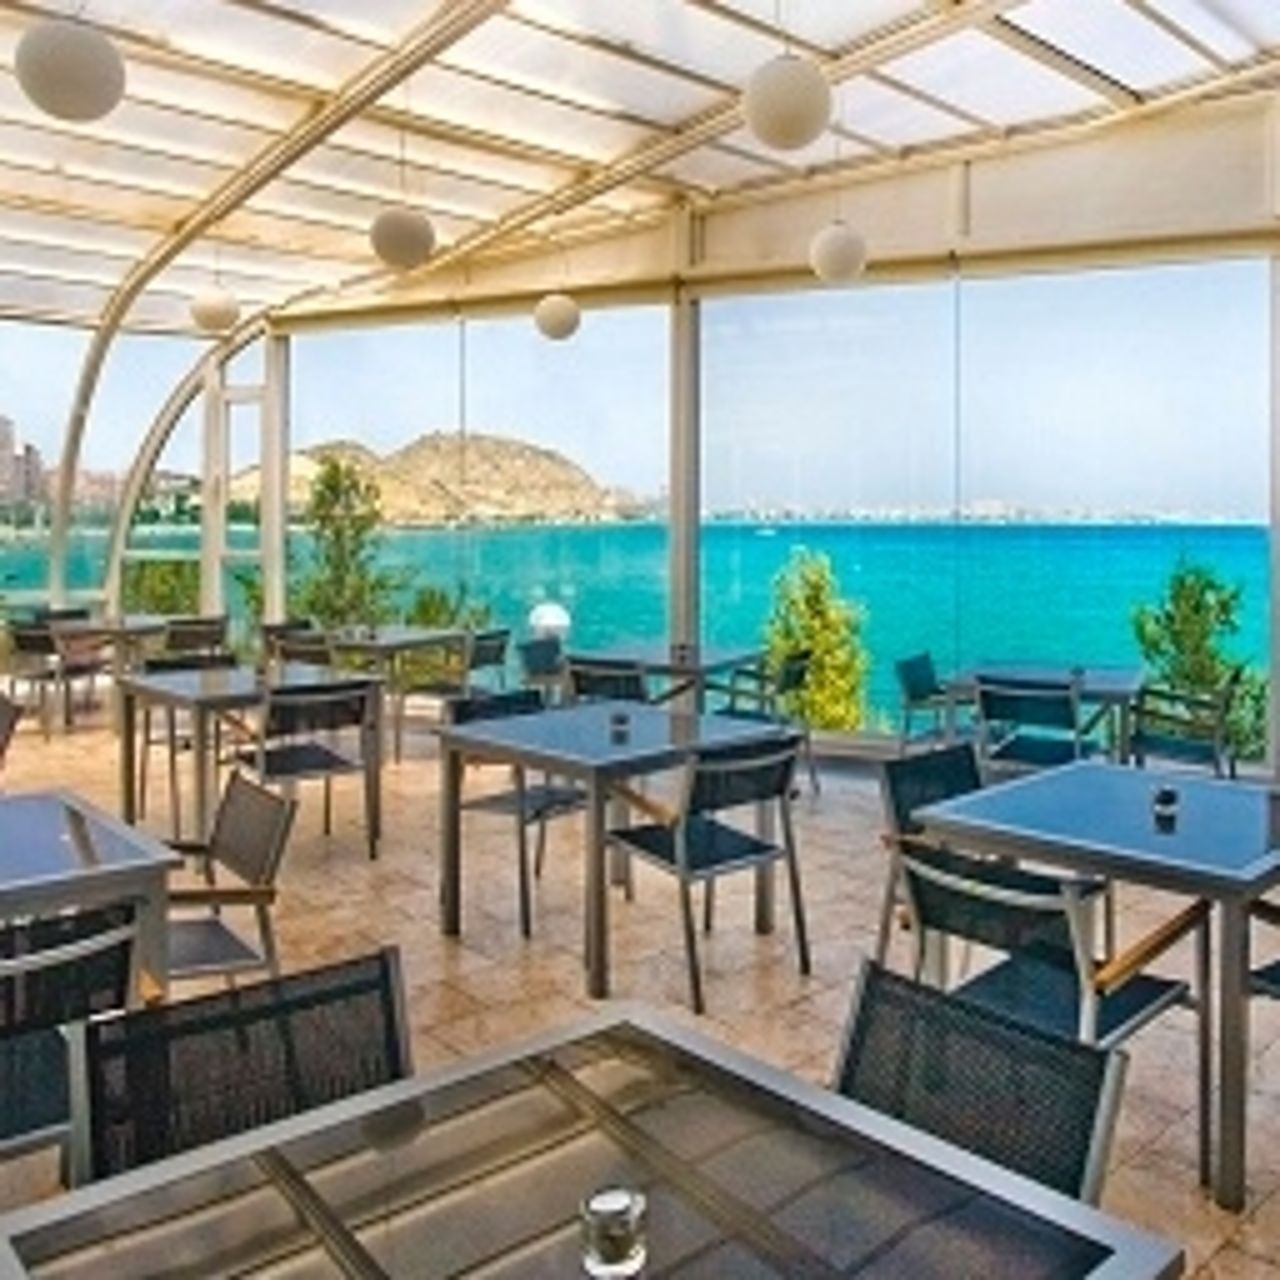 Hotel Sercotel Spa Porta Maris - Alicante - Great prices at HOTEL INFO